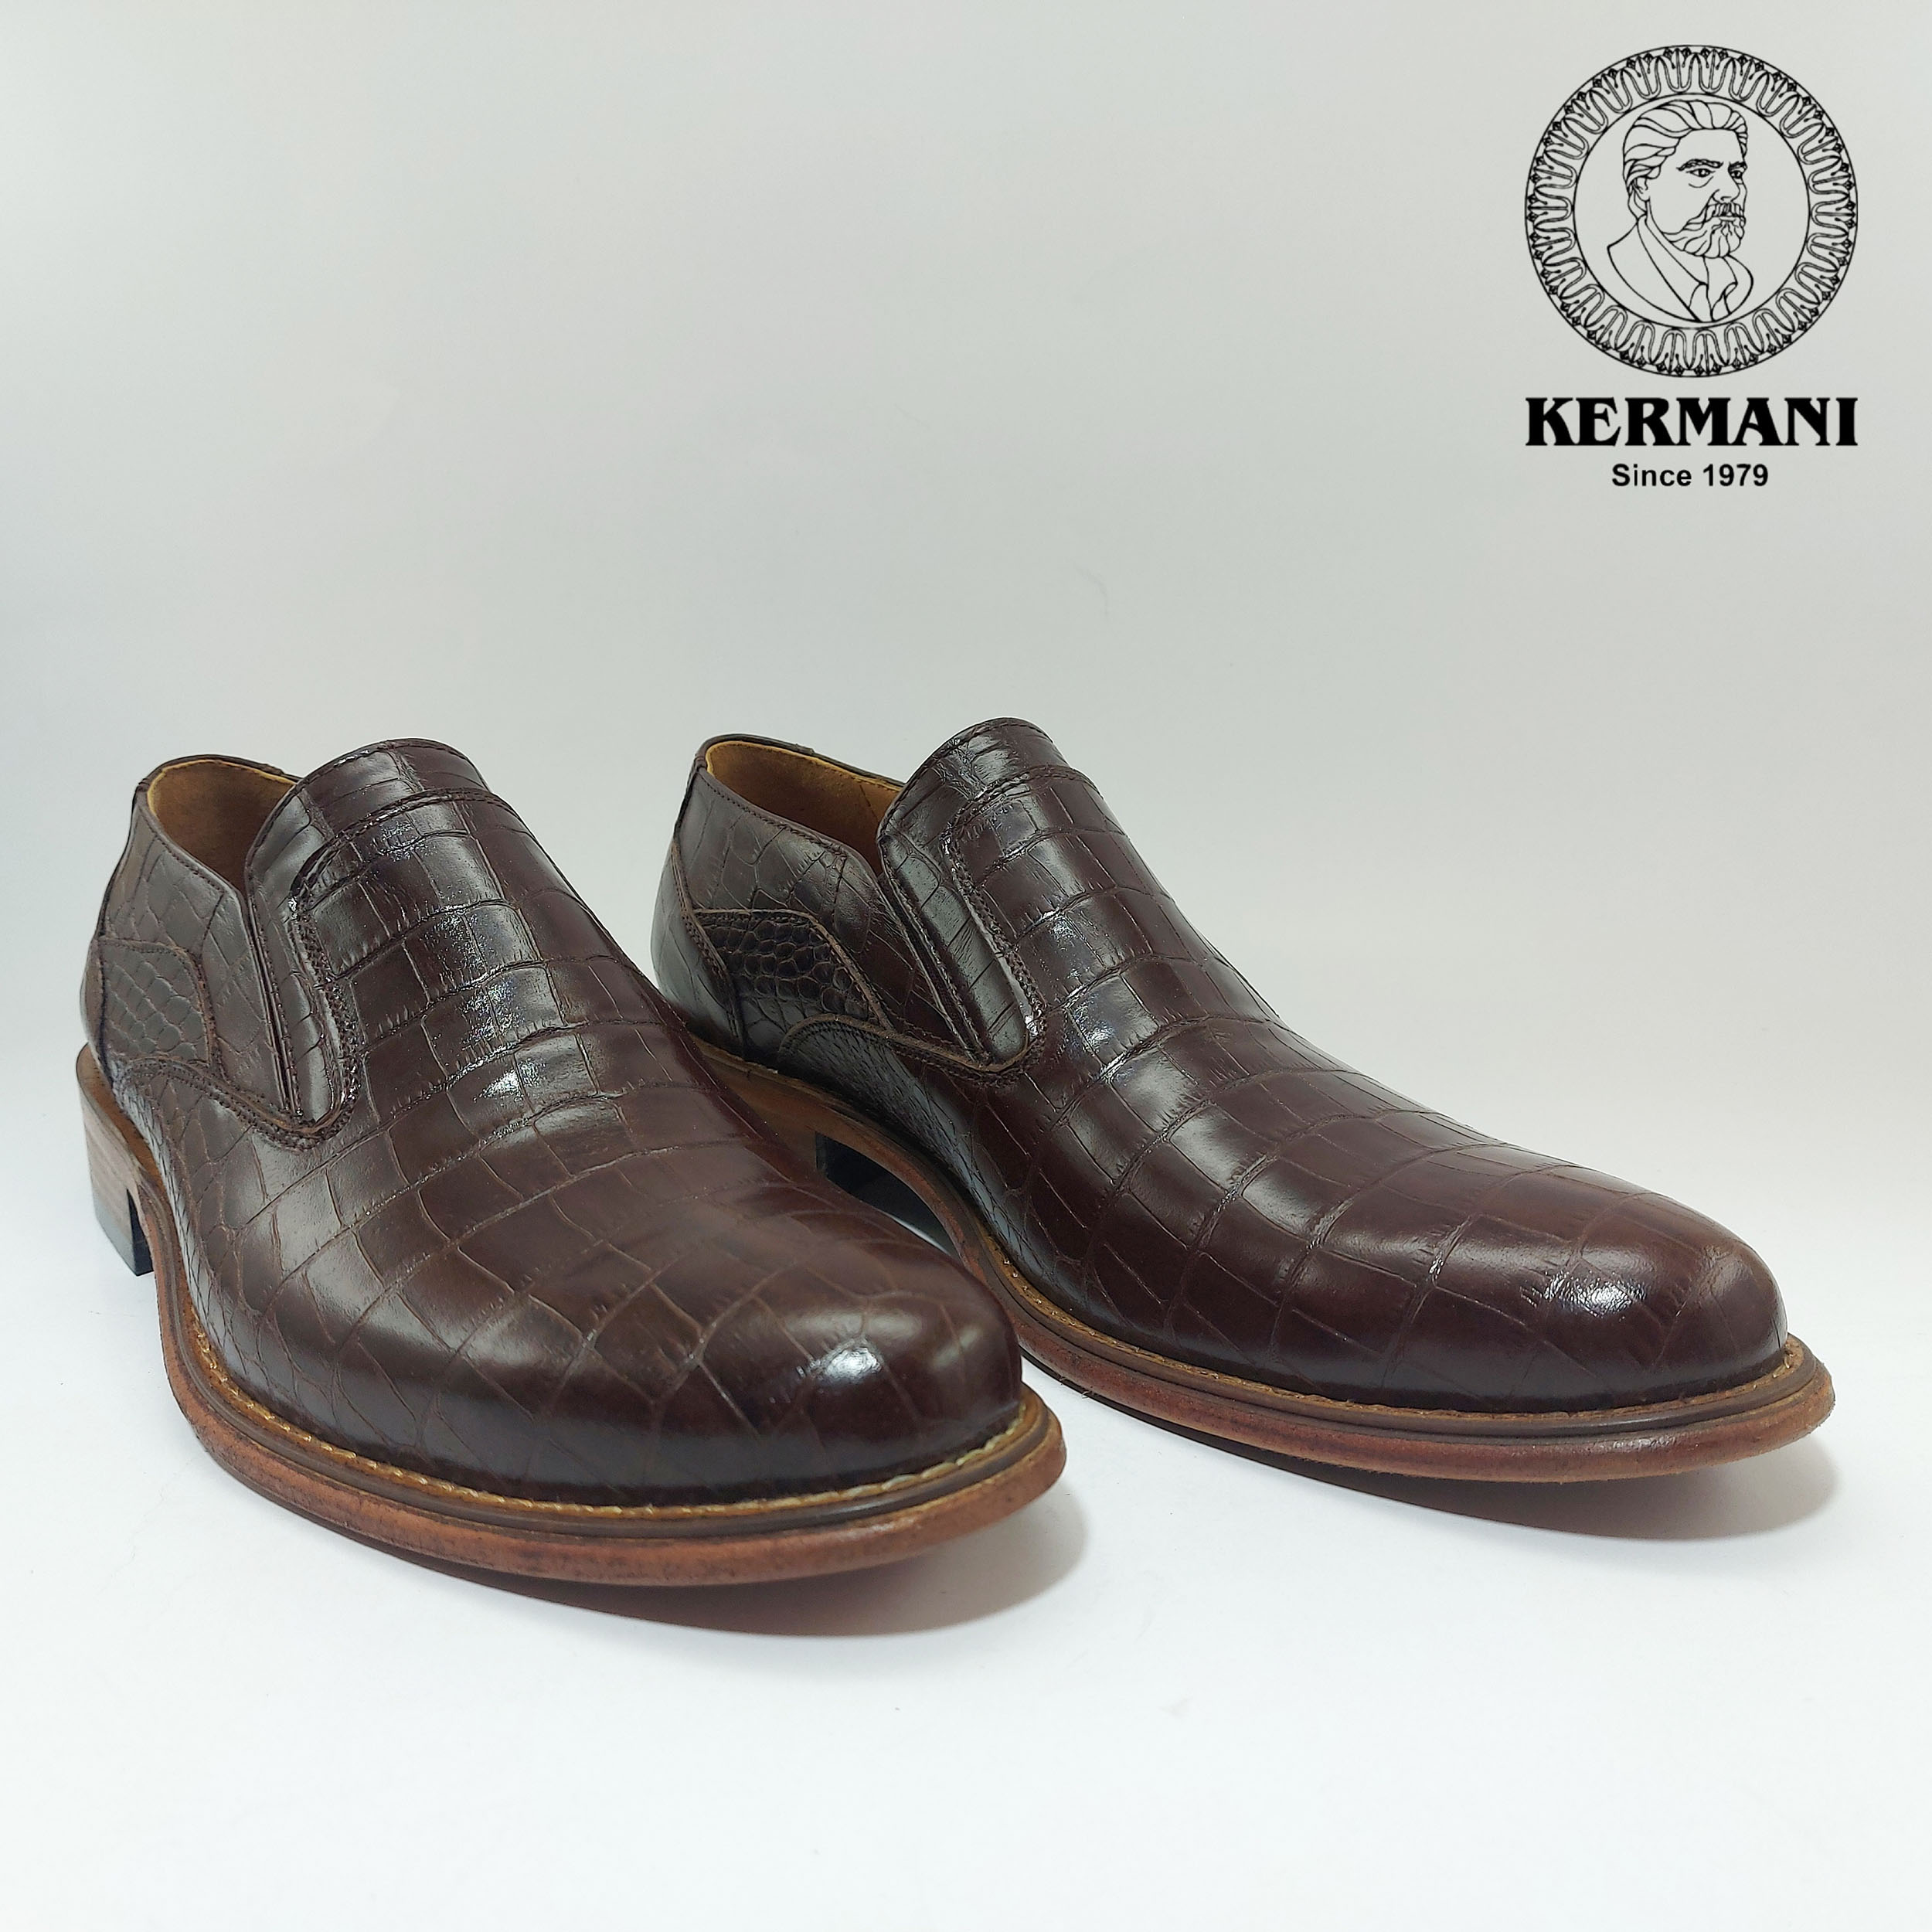 کفش مردانه کرمانی مدل تمام چرم دستدوز کد 350 رنگ قهوه ای -  - 3